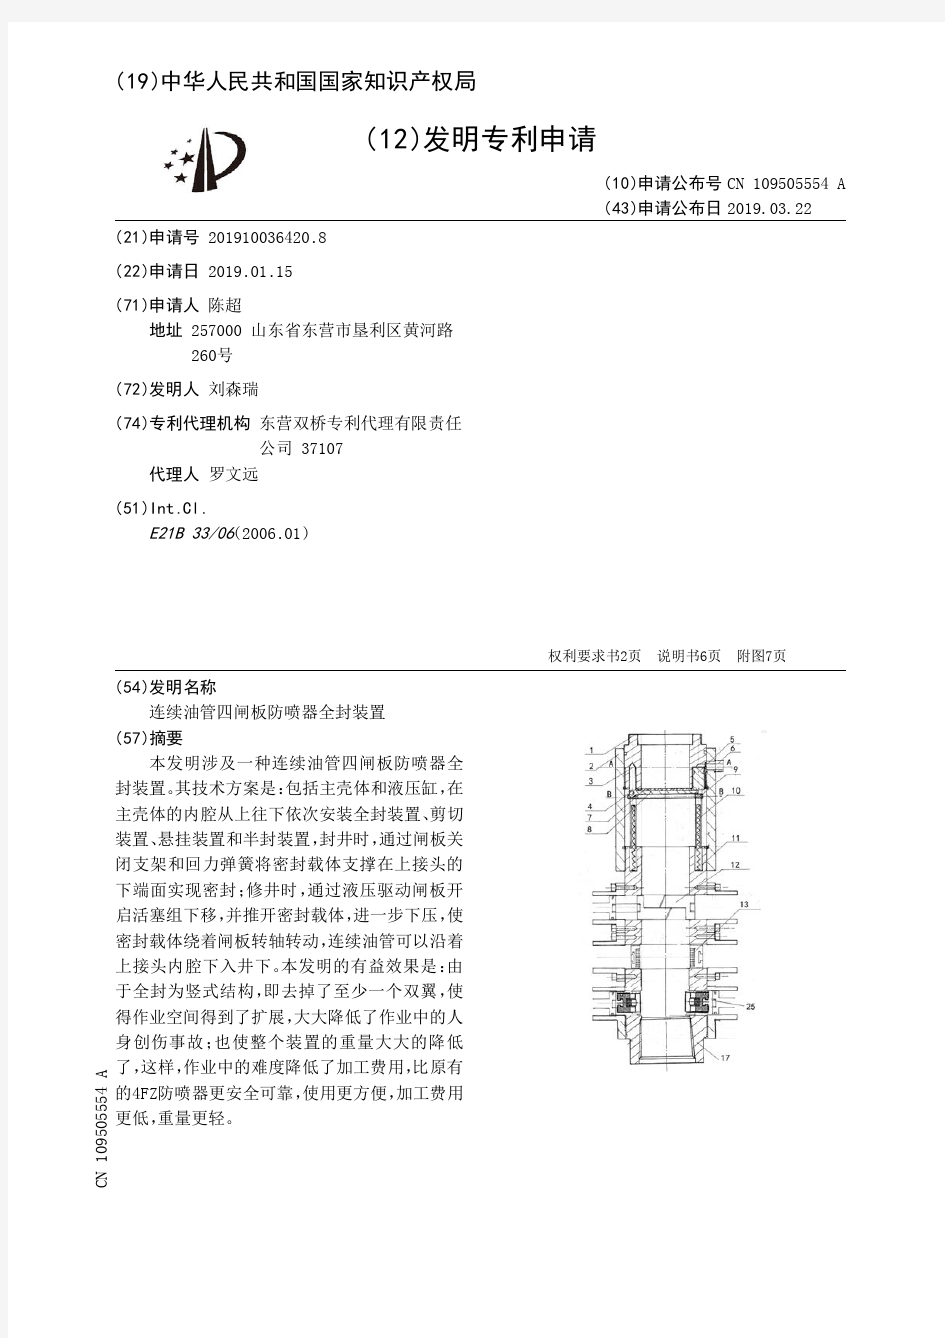 【CN109505554A】连续油管四闸板防喷器全封装置【专利】